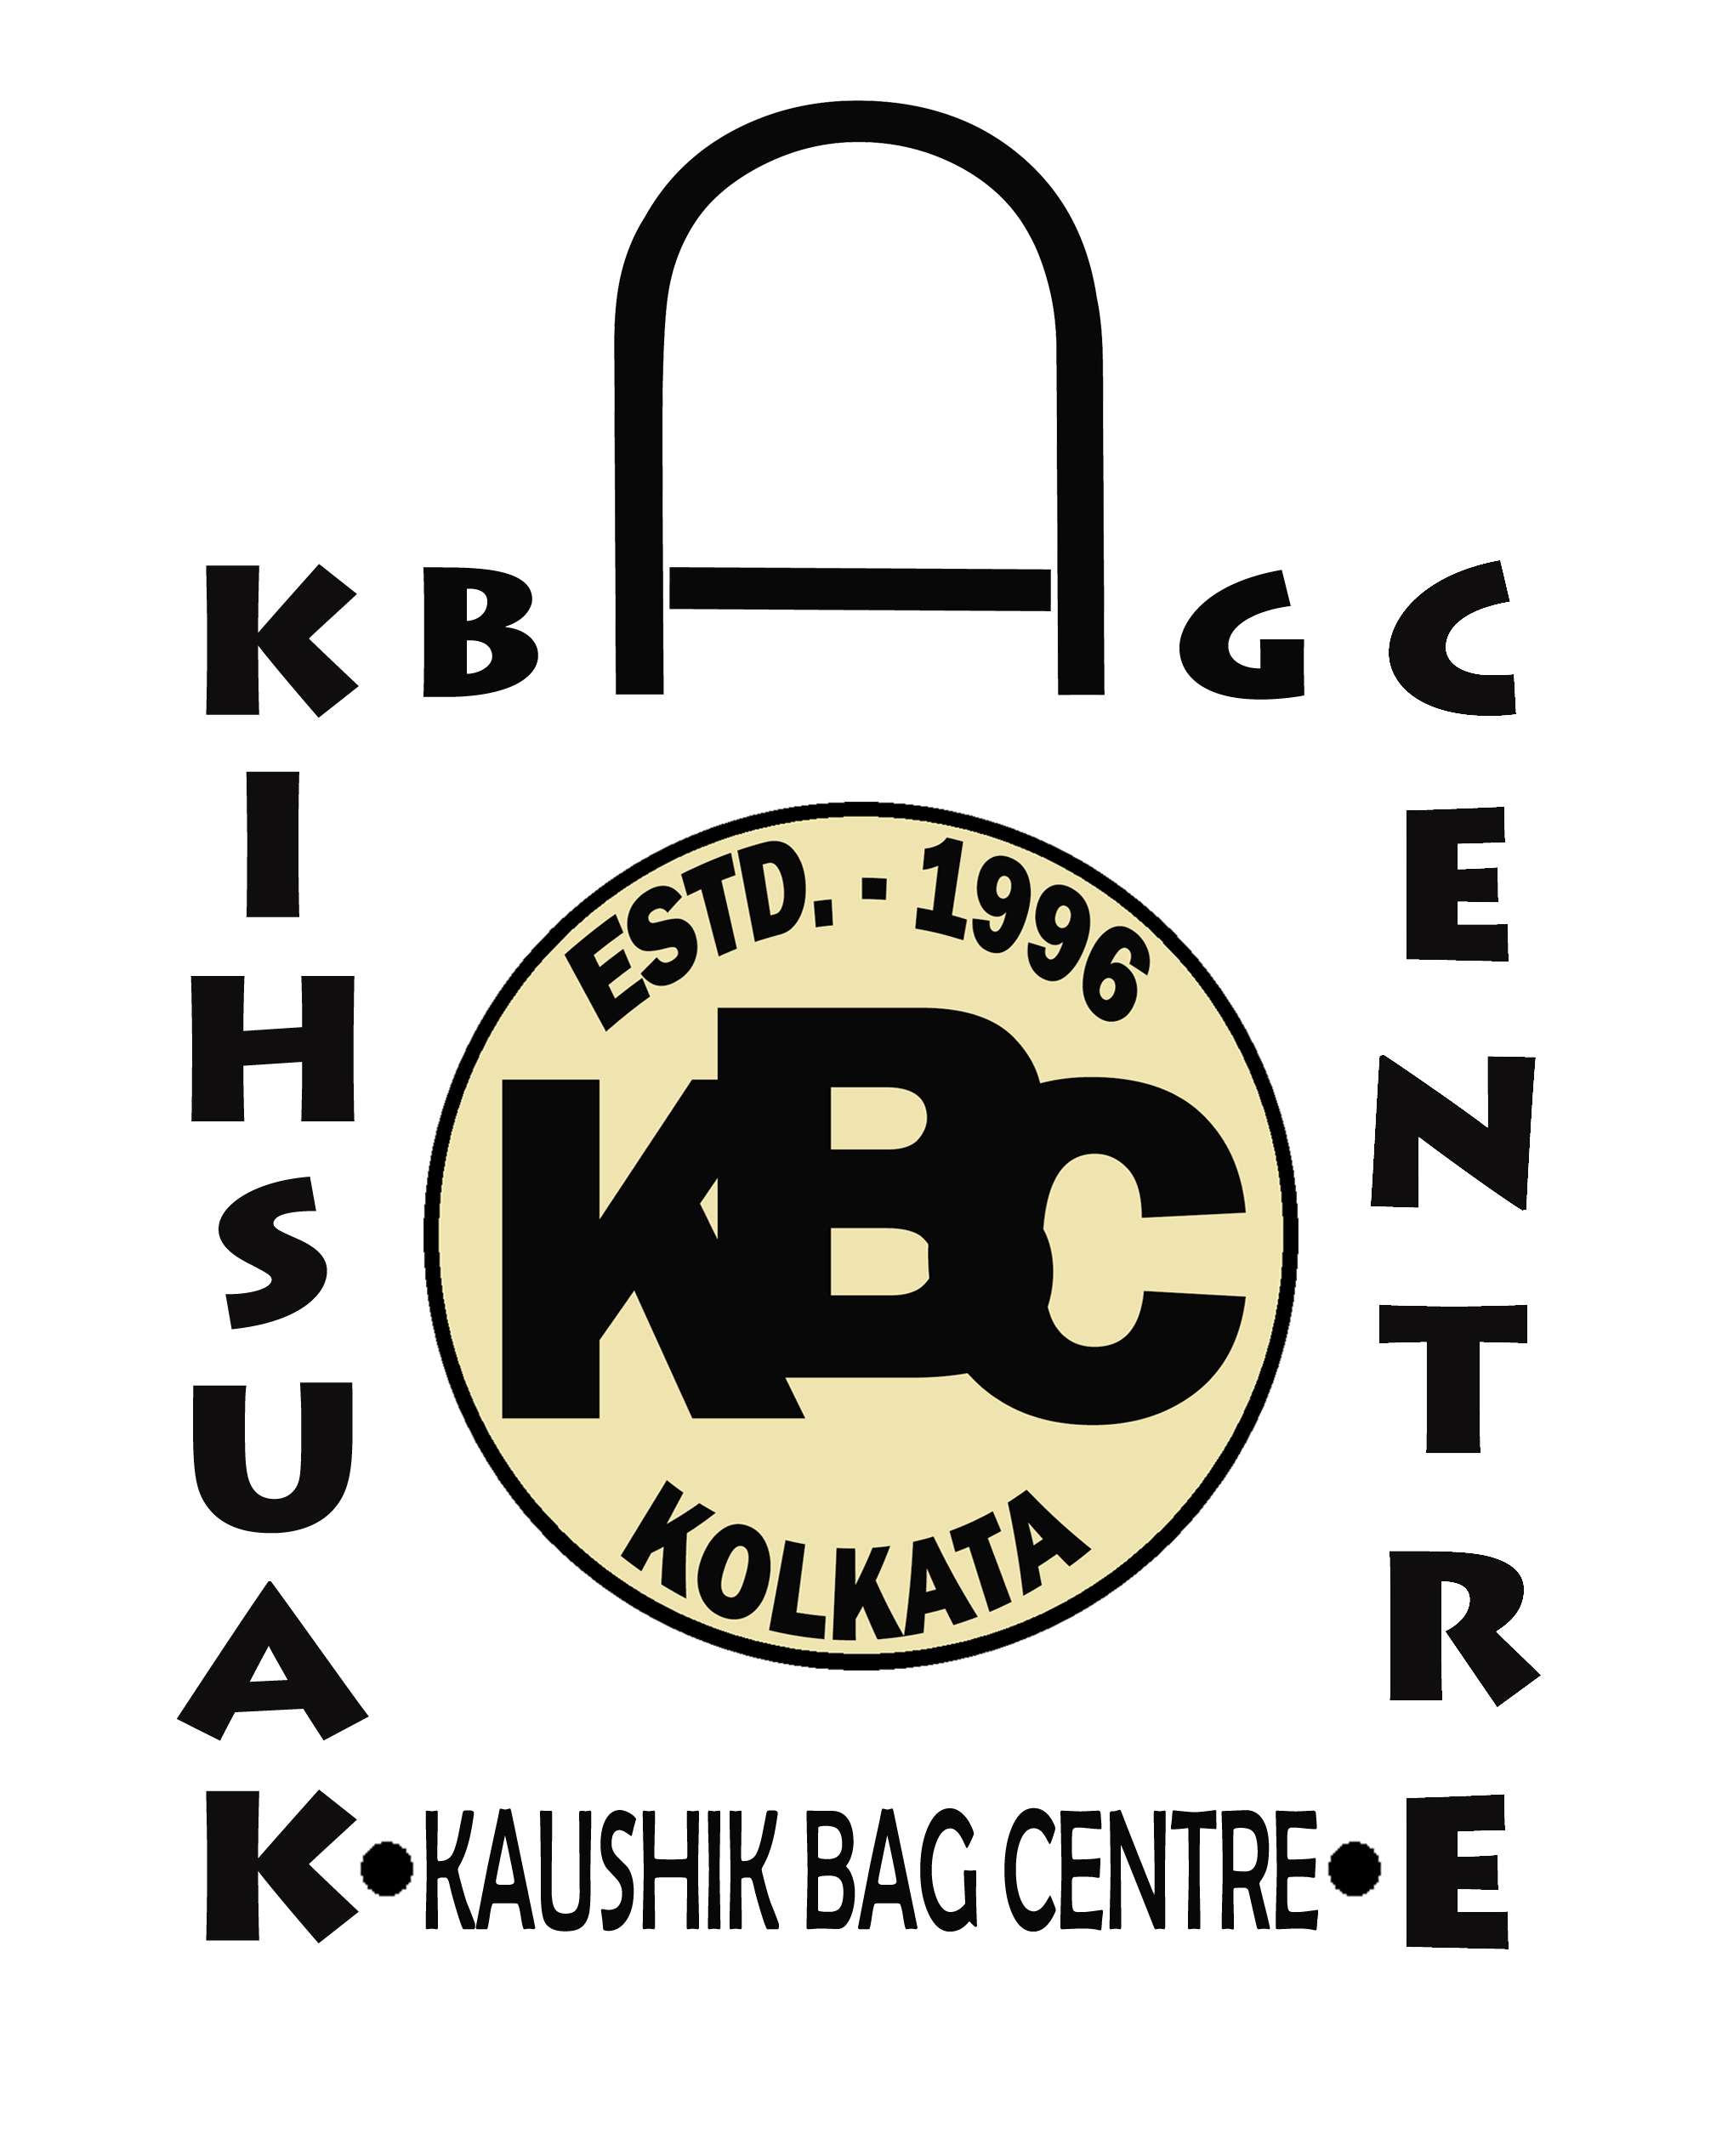 Kaushik Bag Centre